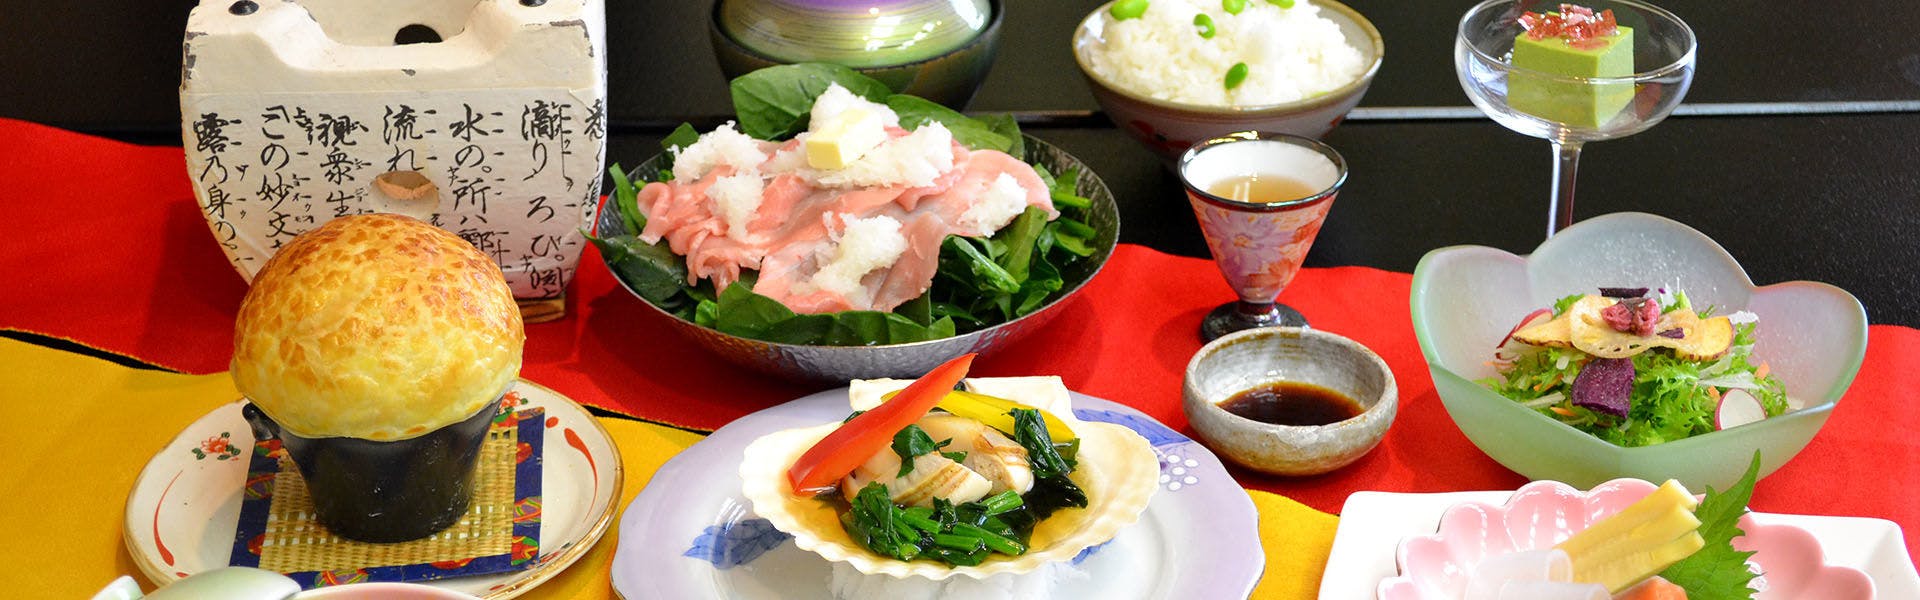 記念日におすすめのホテル・蔵王温泉 岩清水料理の宿 季の里の写真2